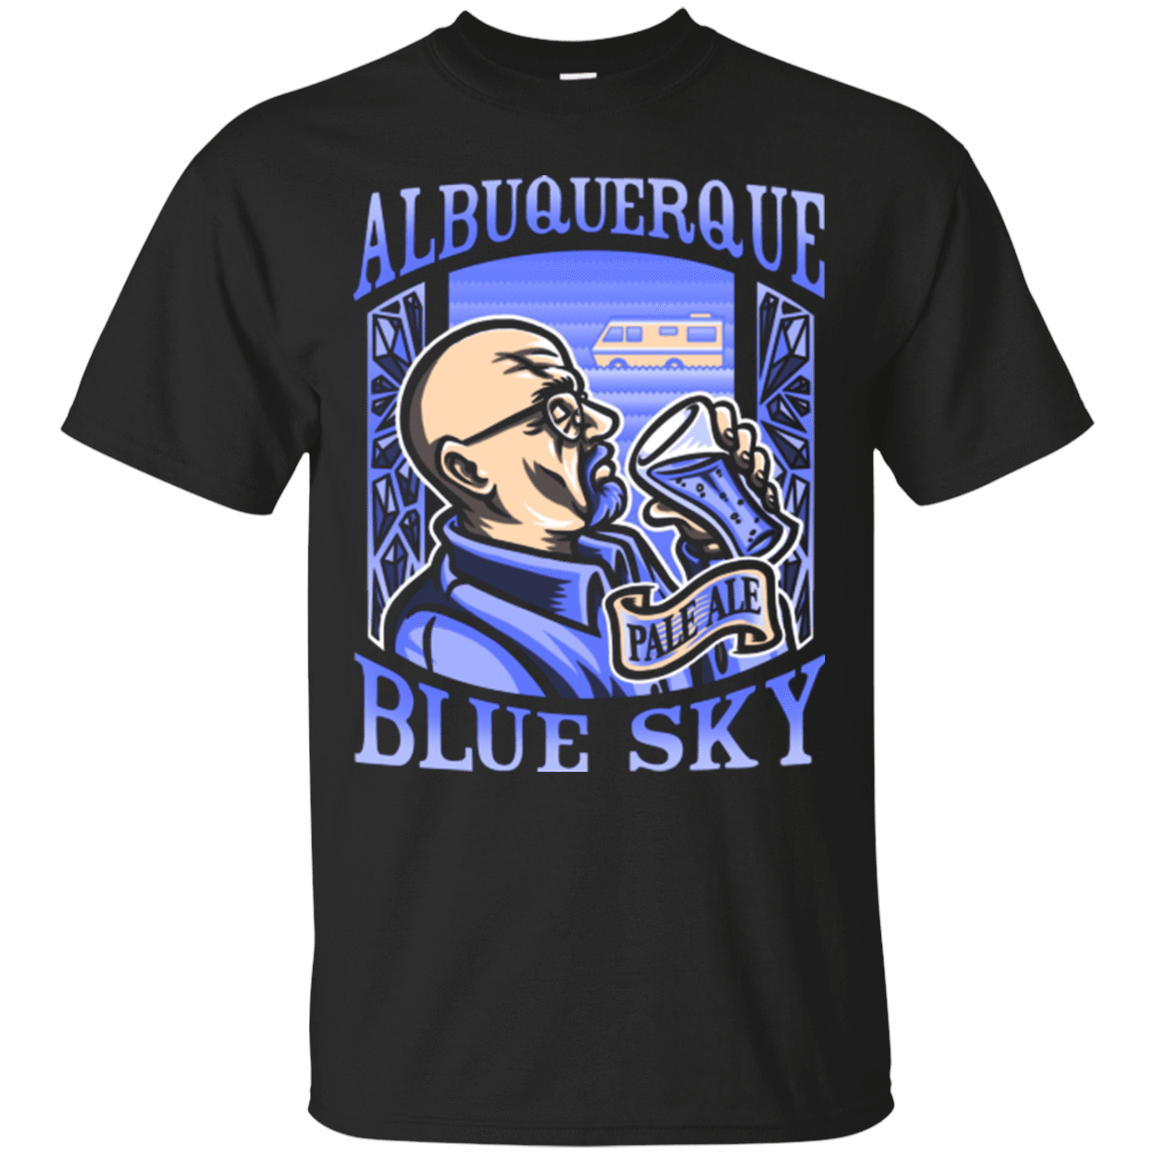 T-Shirts Black / Small Albuquerque Blue Sky T-Shirt